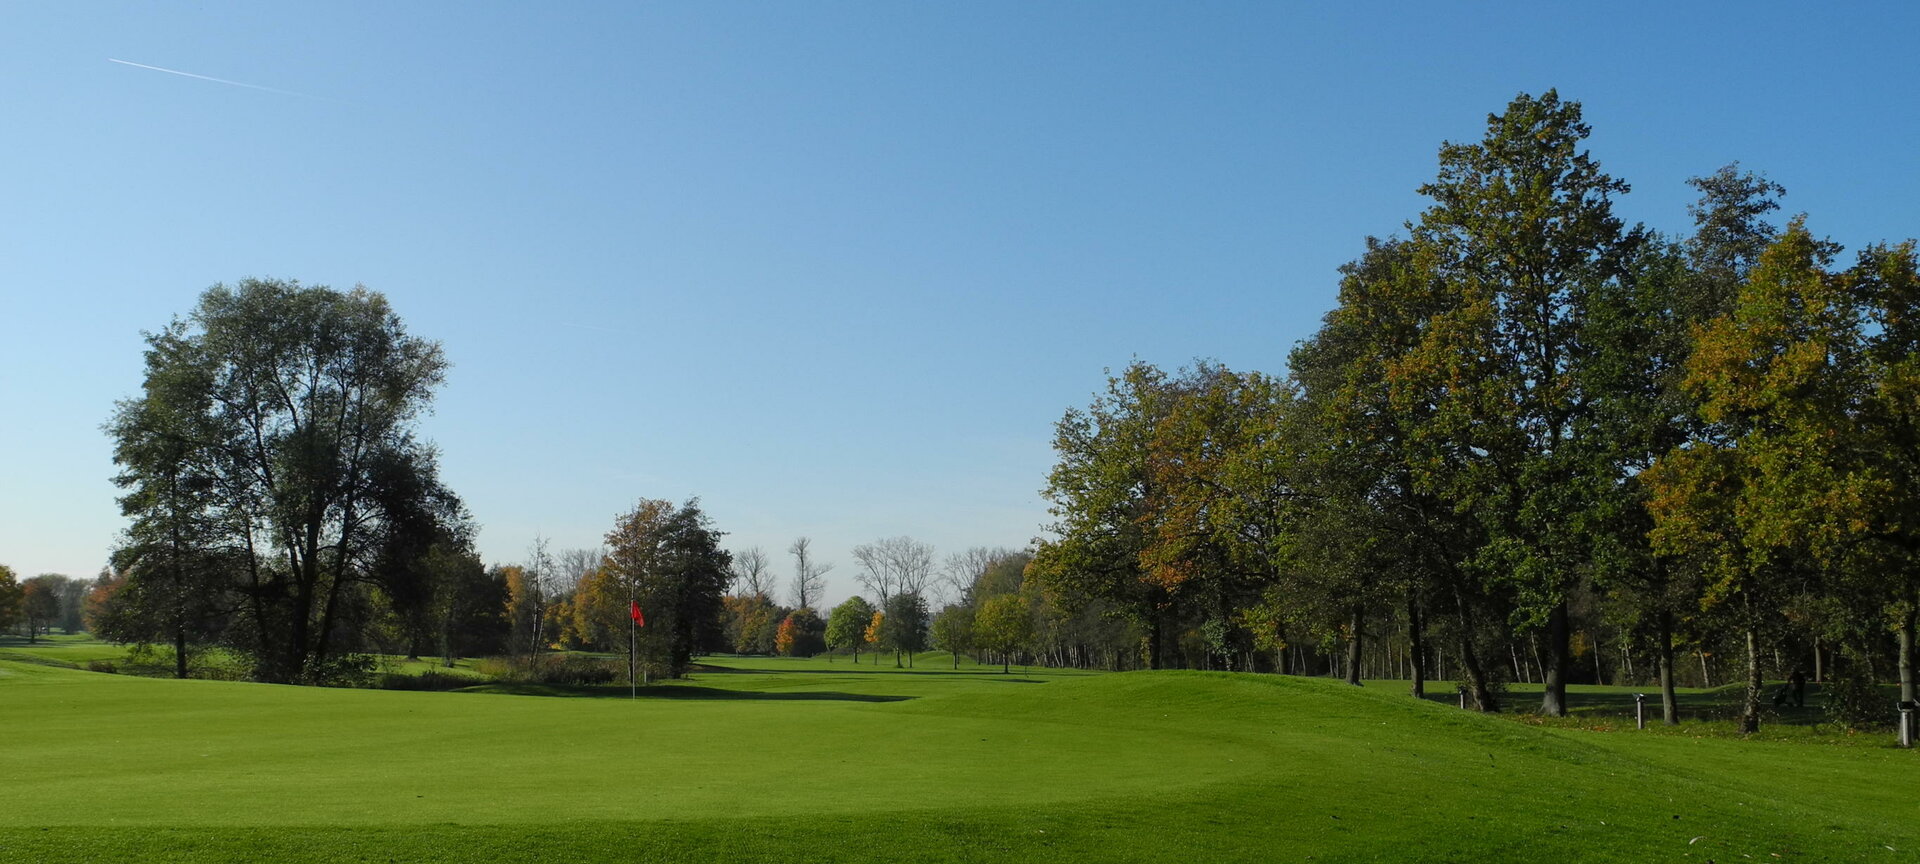 Golfclub Hasselt - green 18